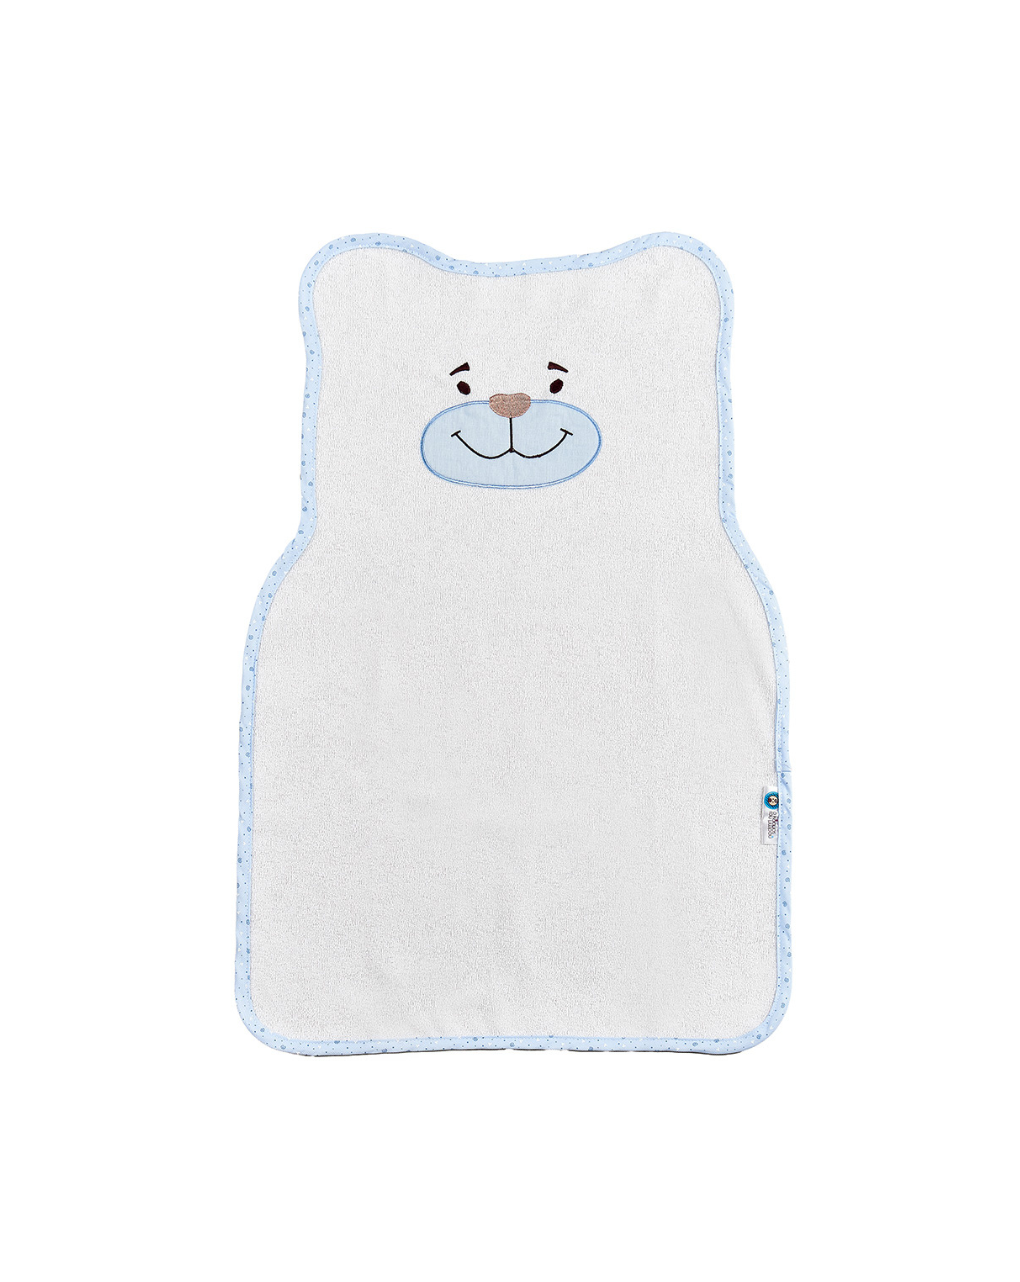 ο κόσμος του μωρού σελτεδάκι 46x70 cm πλαστικοποιημένης πετσέτας bear σιέλ 11332